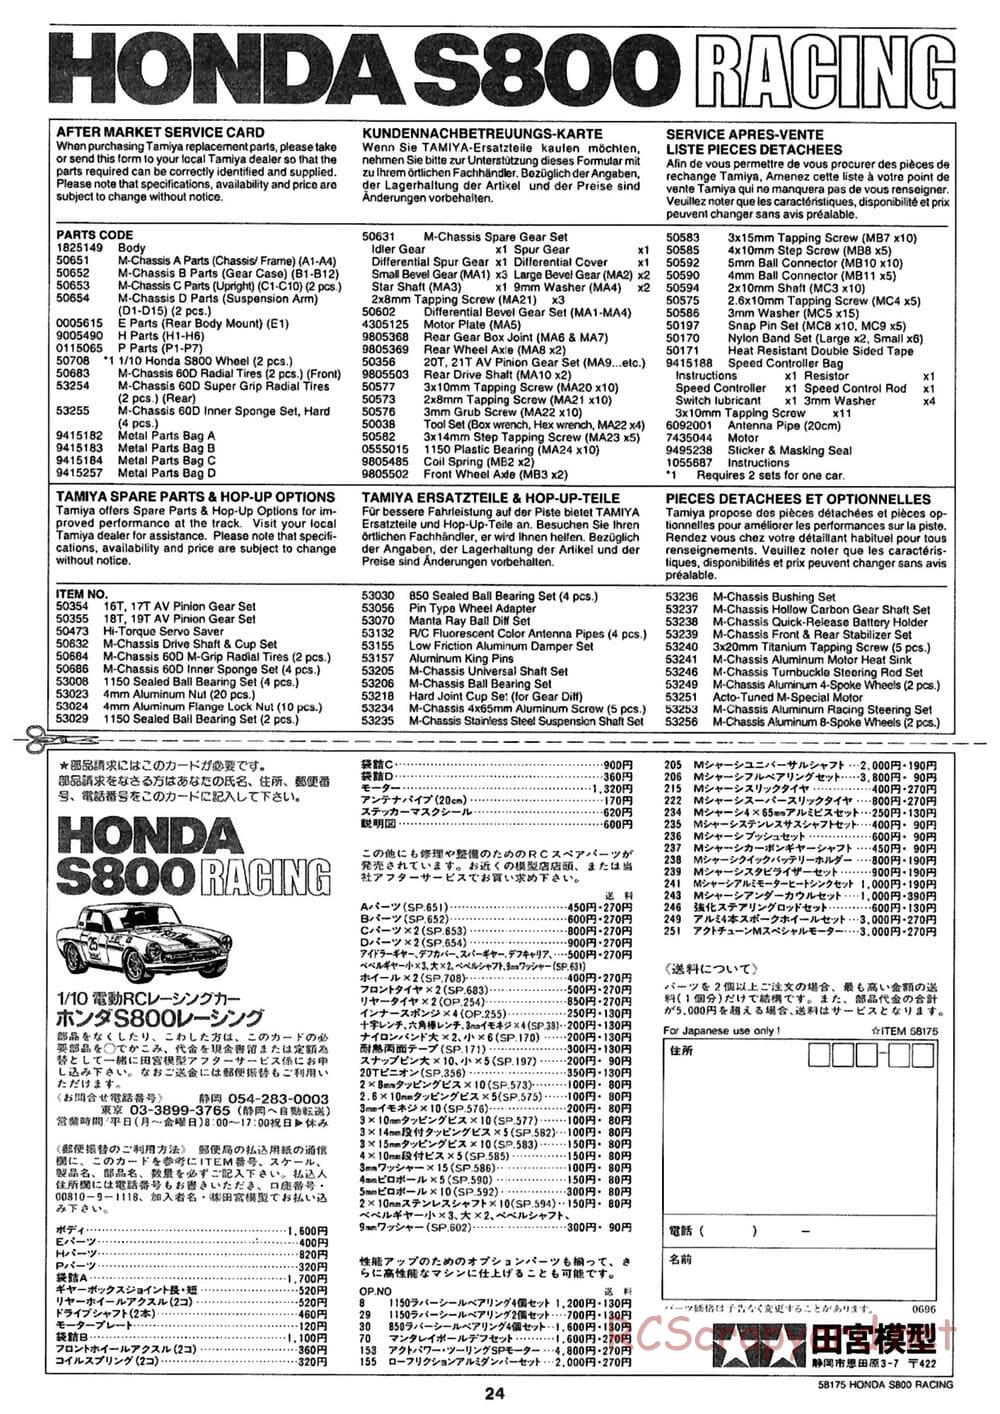 Tamiya - Honda S800 Racing - M02 Chassis - Manual - Page 24